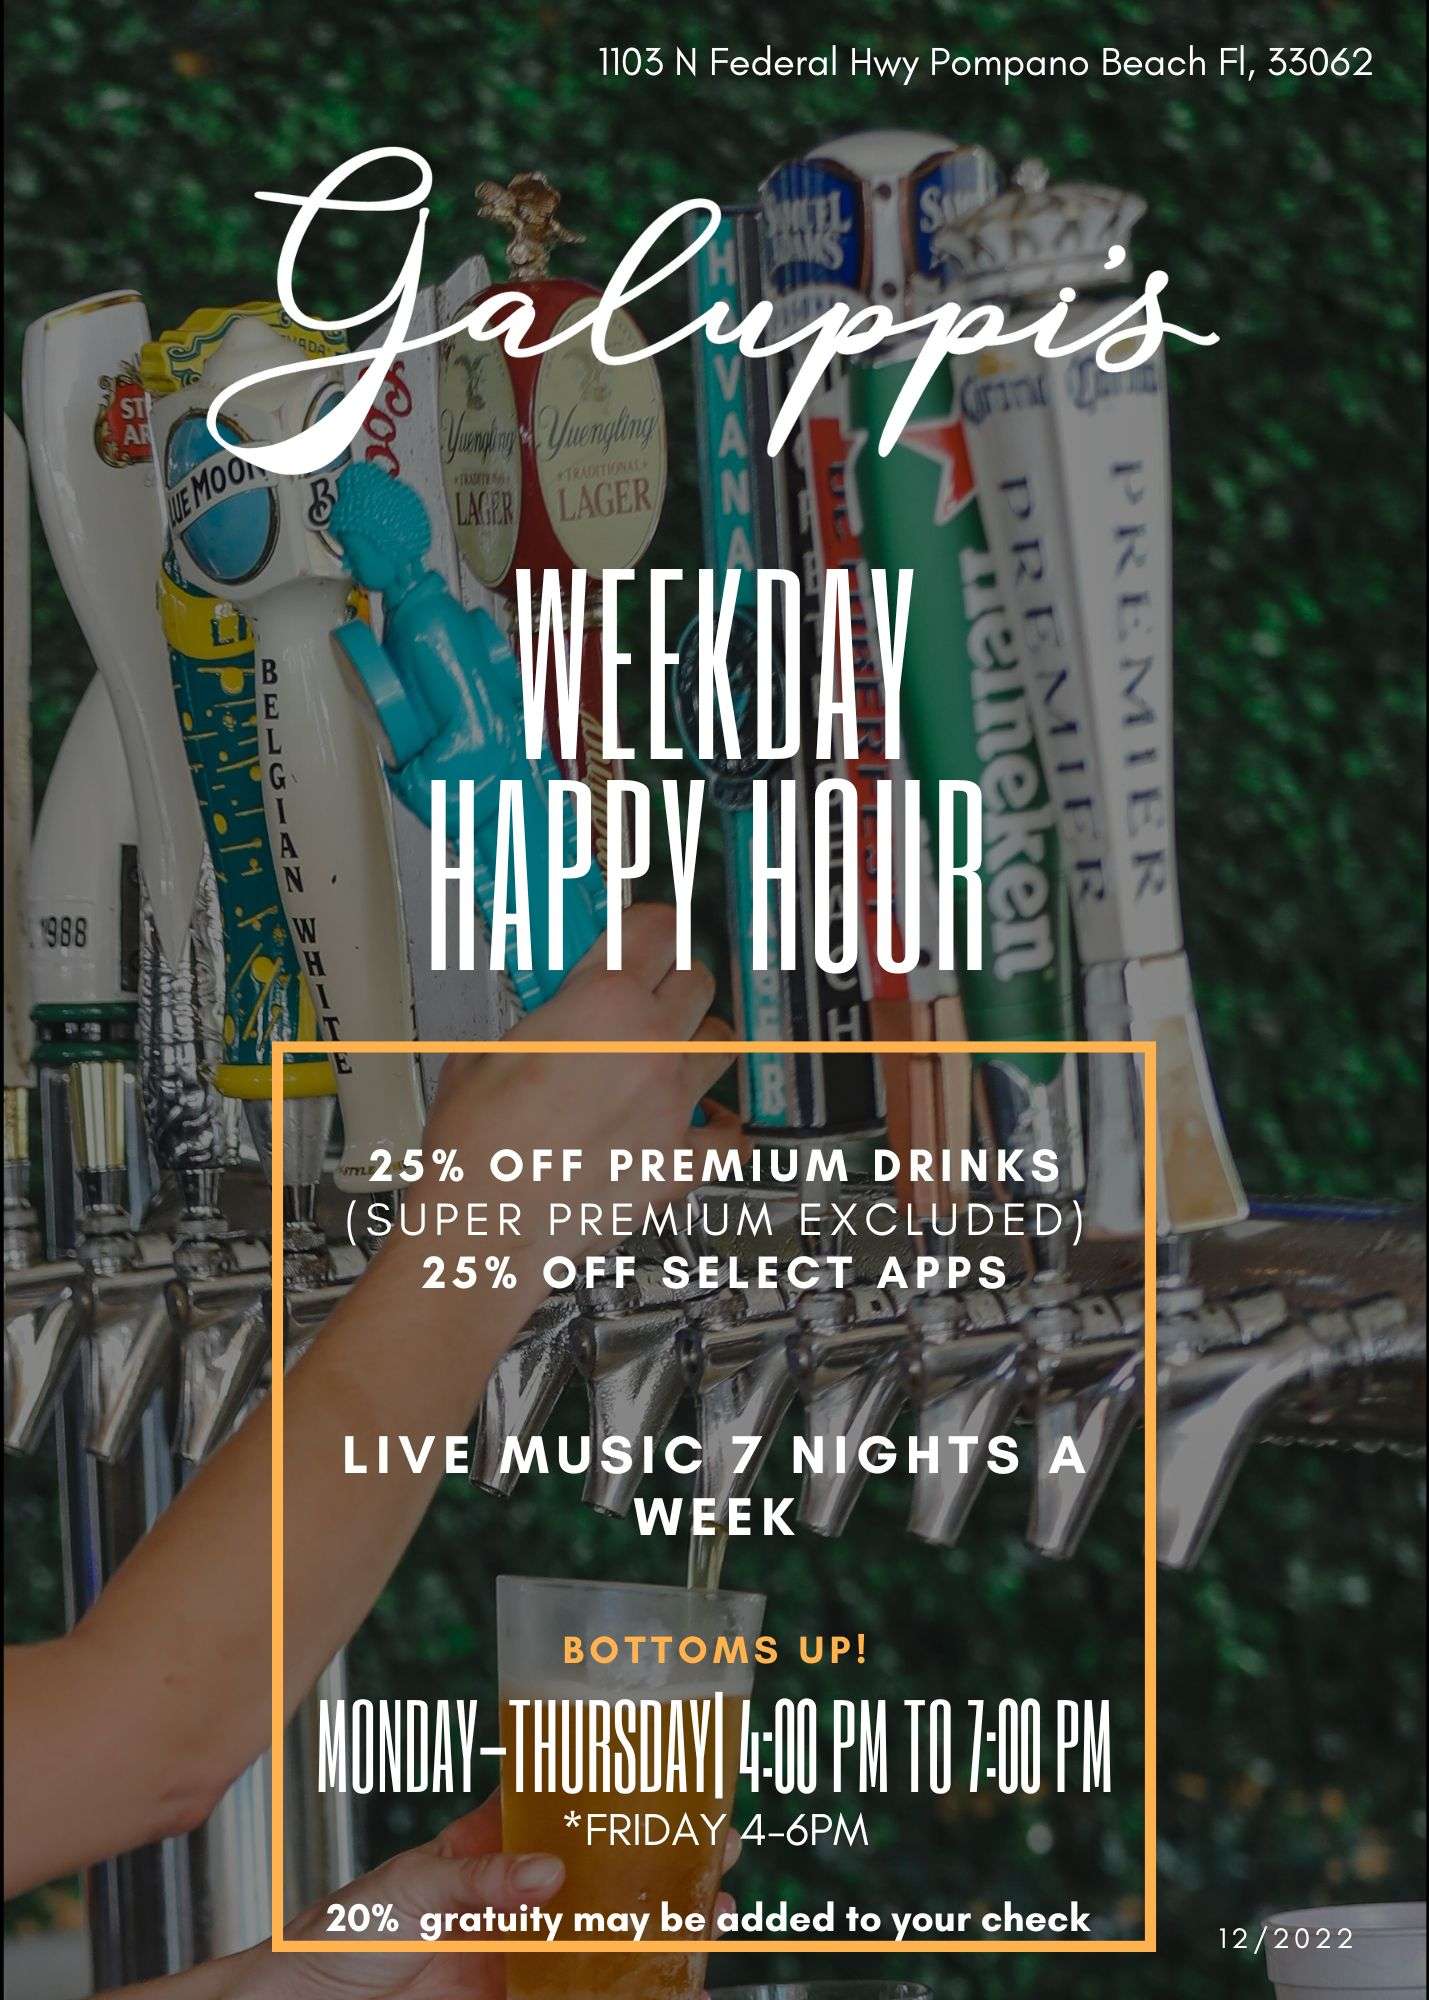 Weekday Happy Hour in Pompano Beach FL